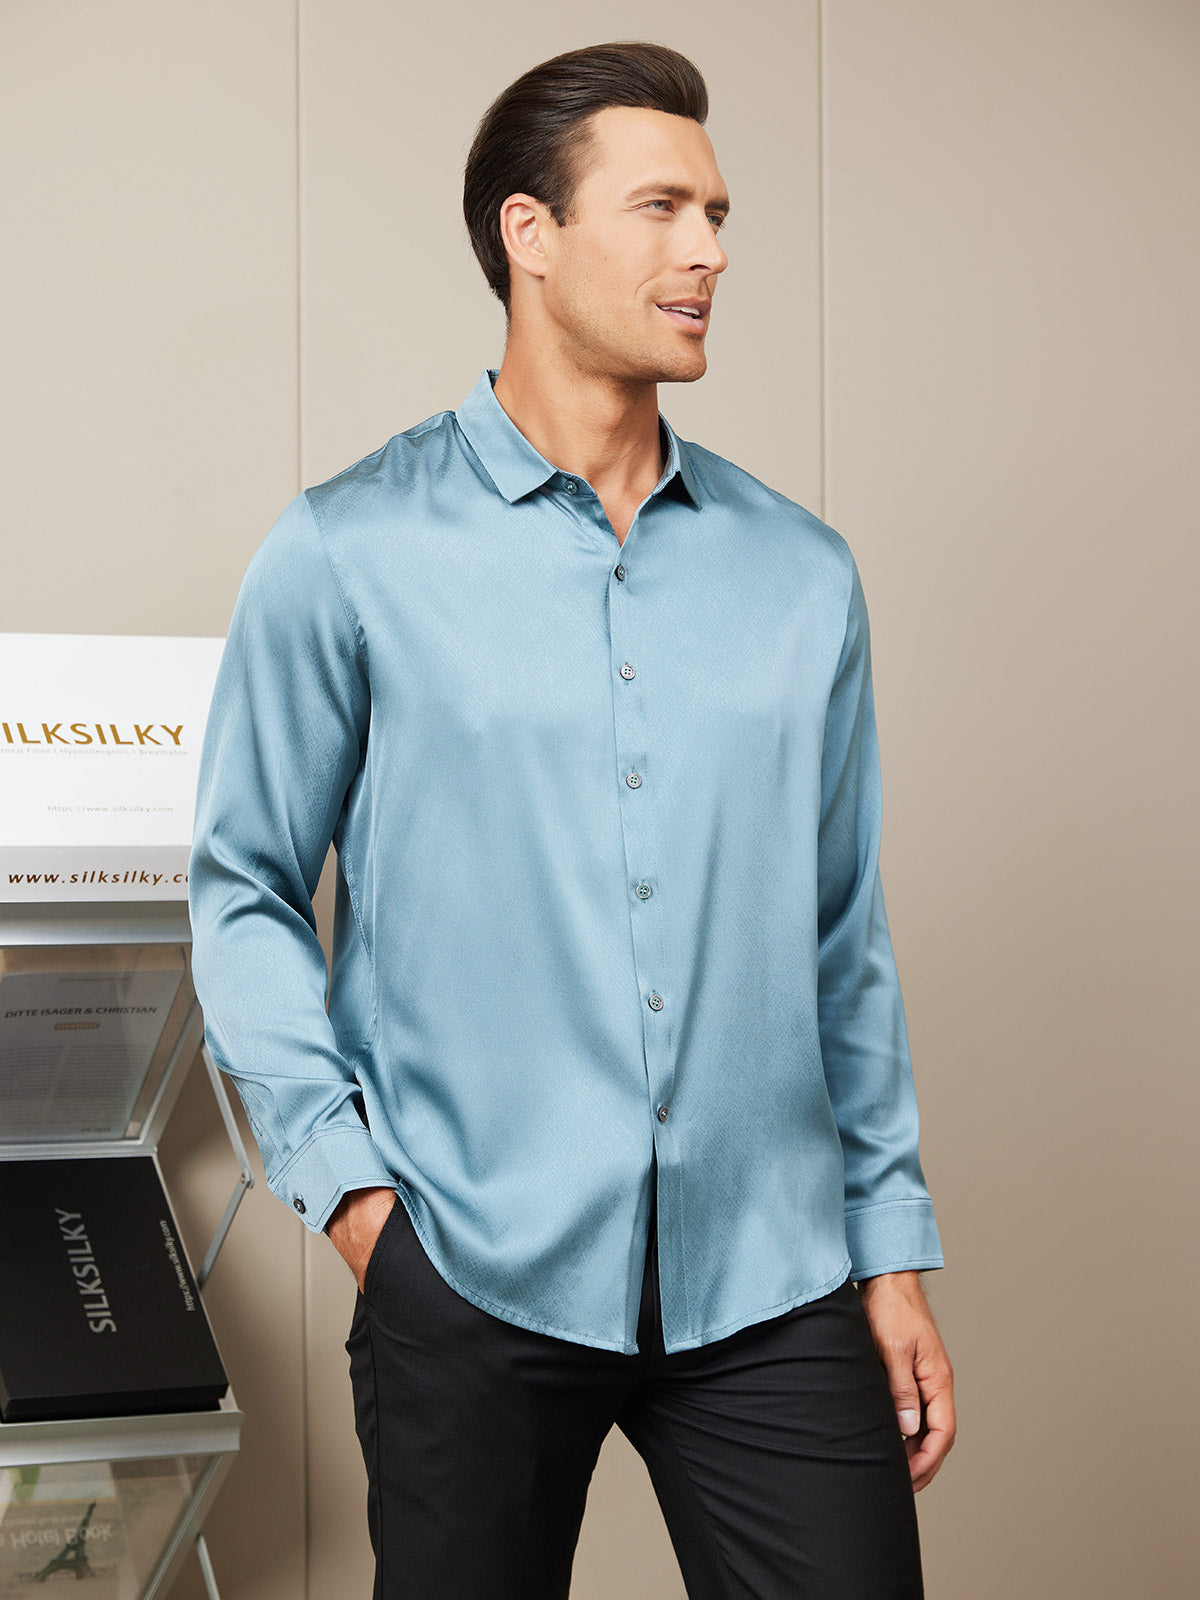 Silksilky Long Sleeve Buttons Up Shirt for Mens Silk Button Up